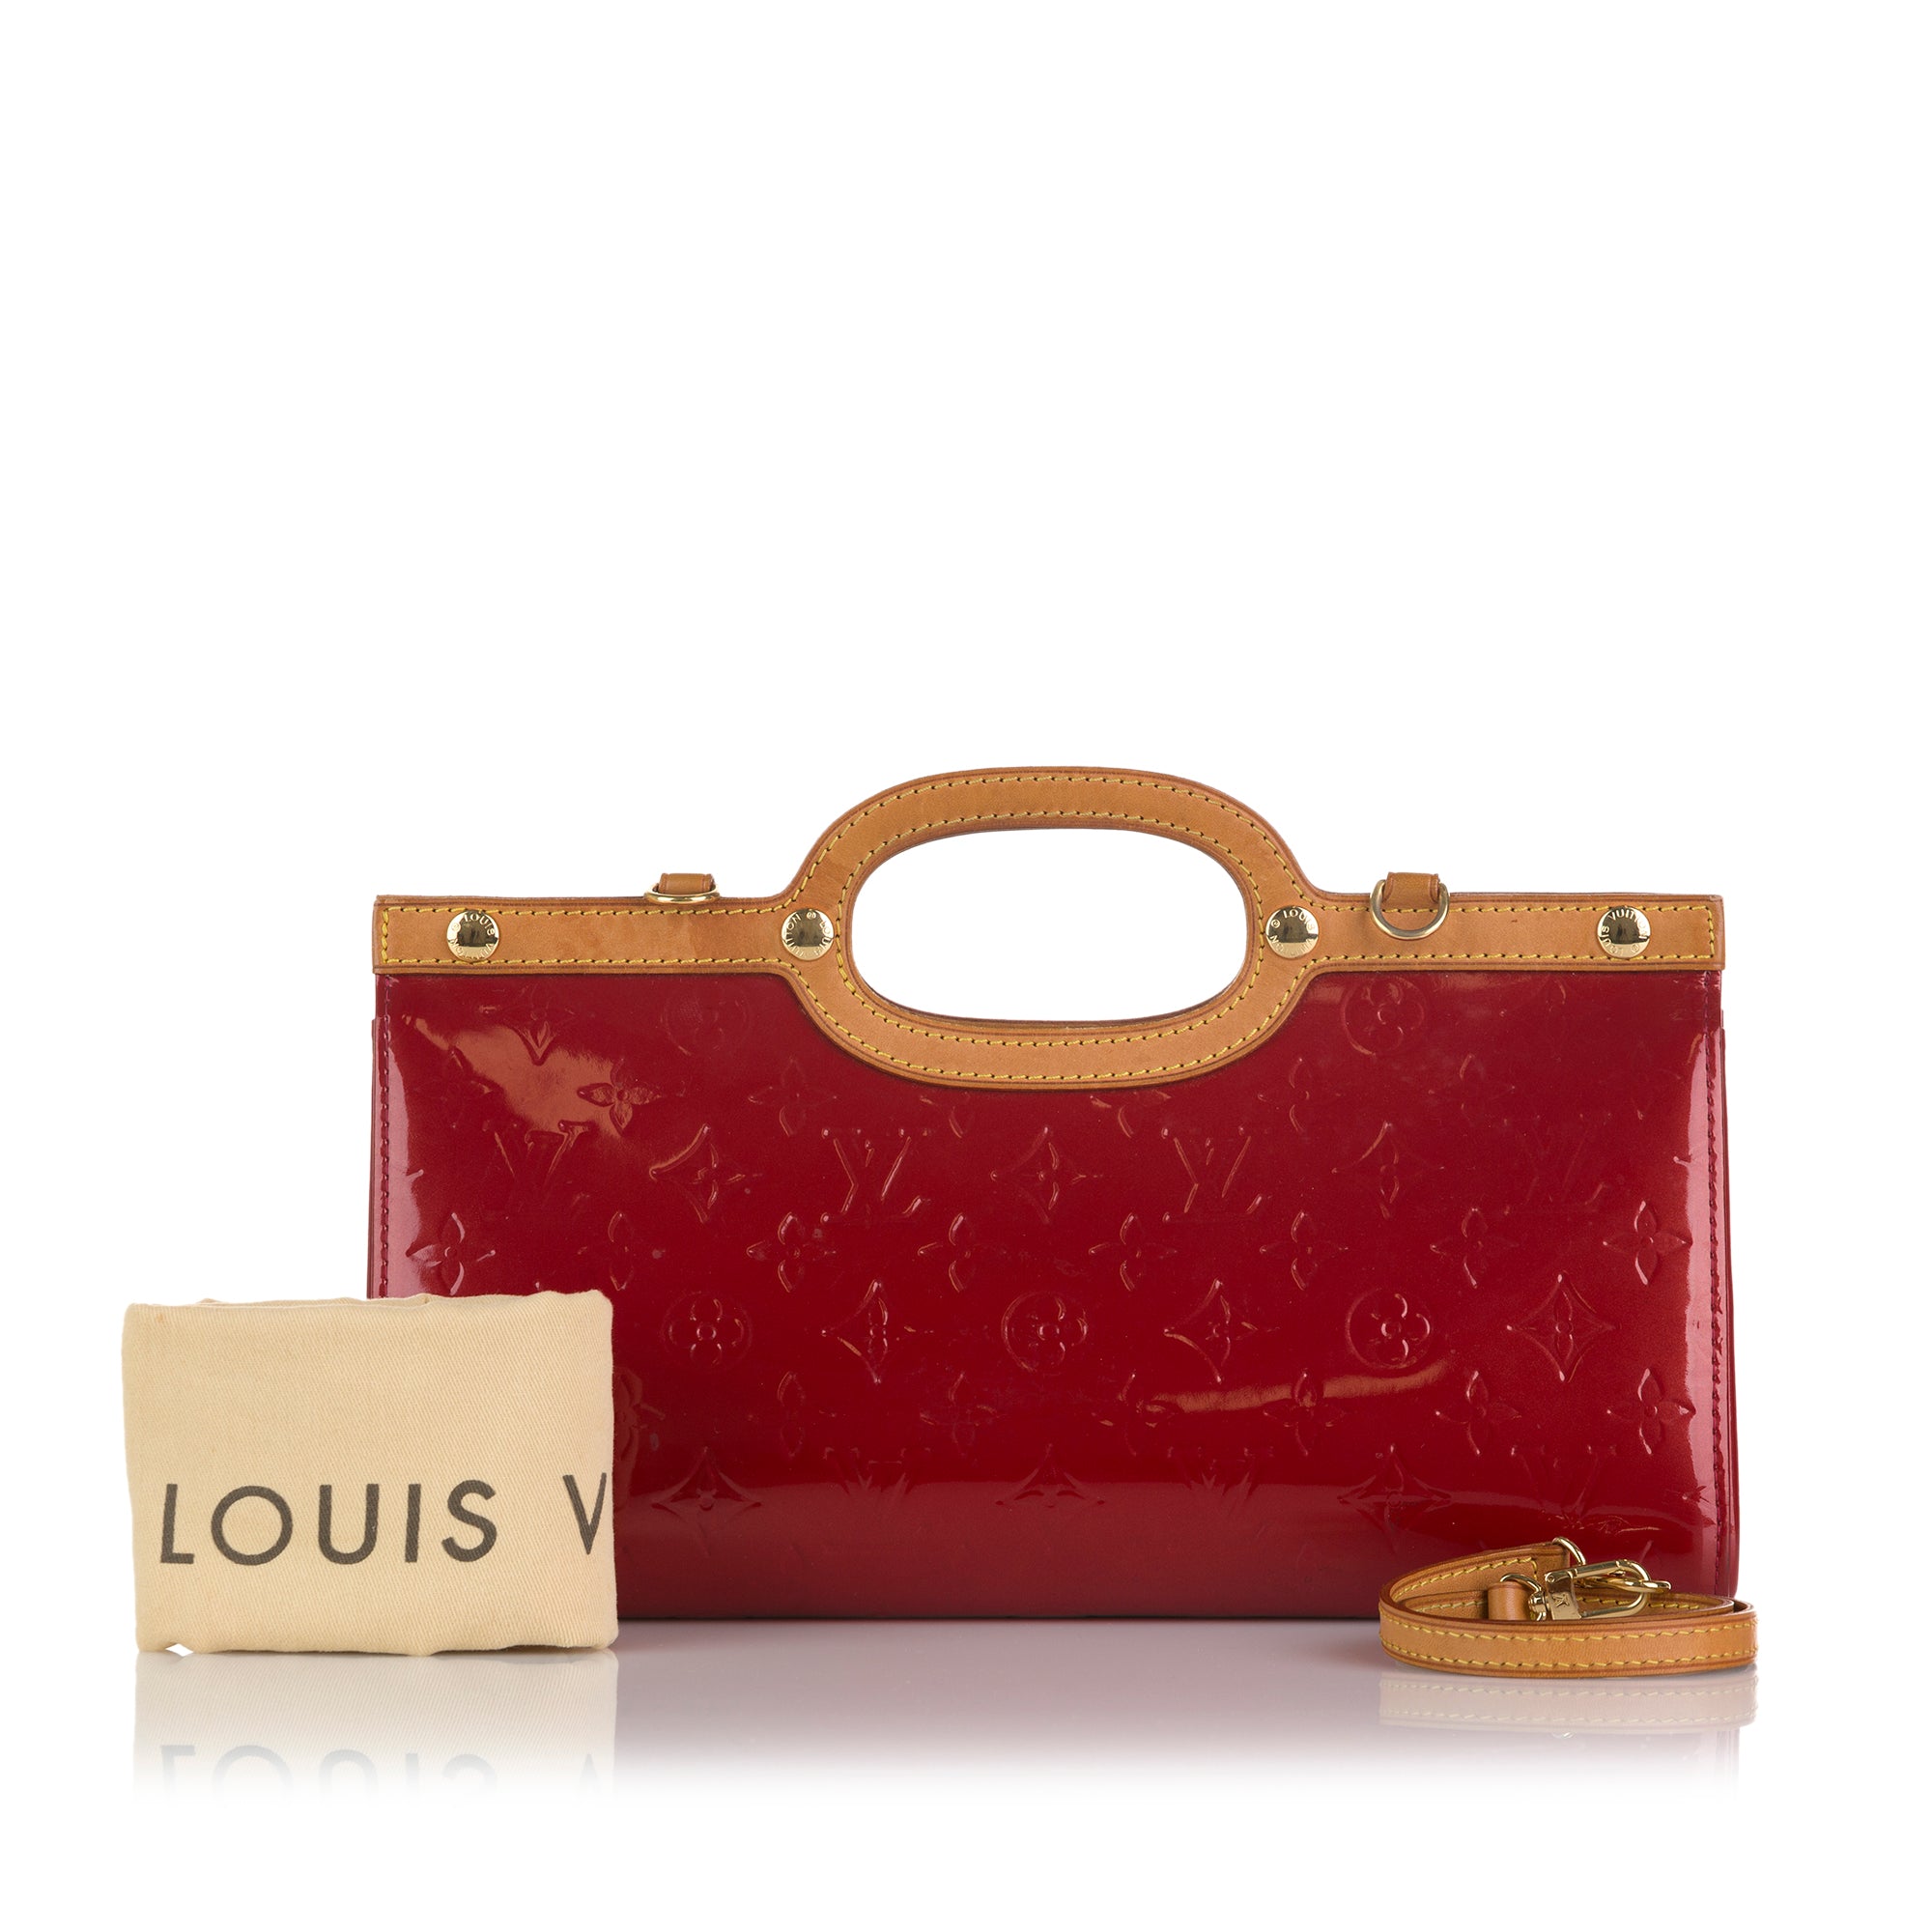 Precio de los bolsos Louis Vuitton Danube de segunda mano